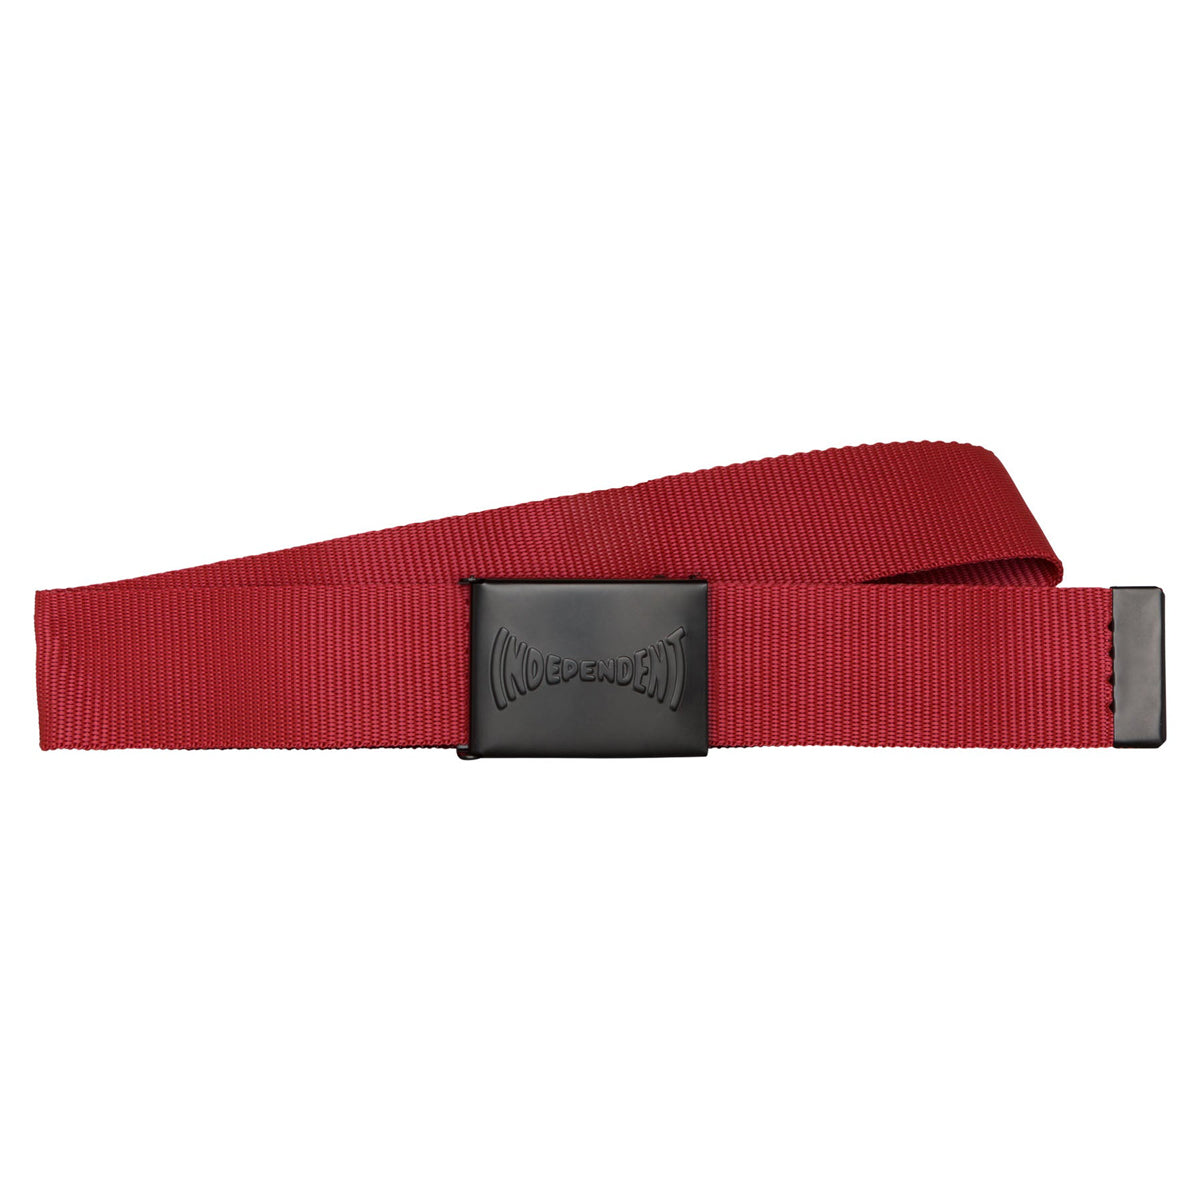 Independent Span Web Belt - Red image 1